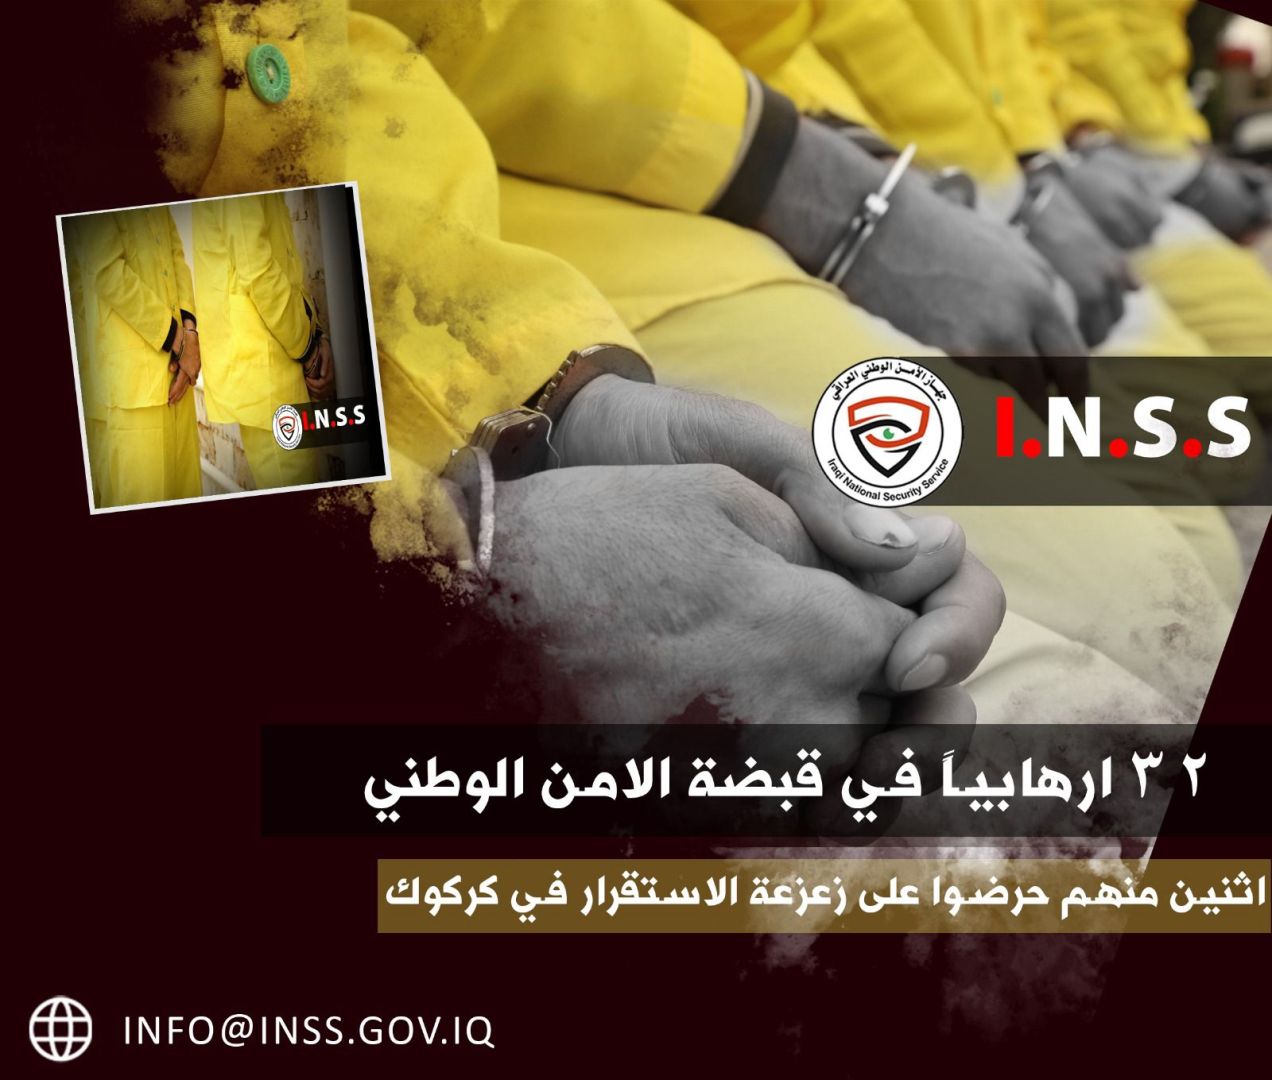 الامن الوطني: اعتقال 32 إرهابياً بينهم إثنان نشرا مقاطع فيديوية تروج لداعش في كركوك